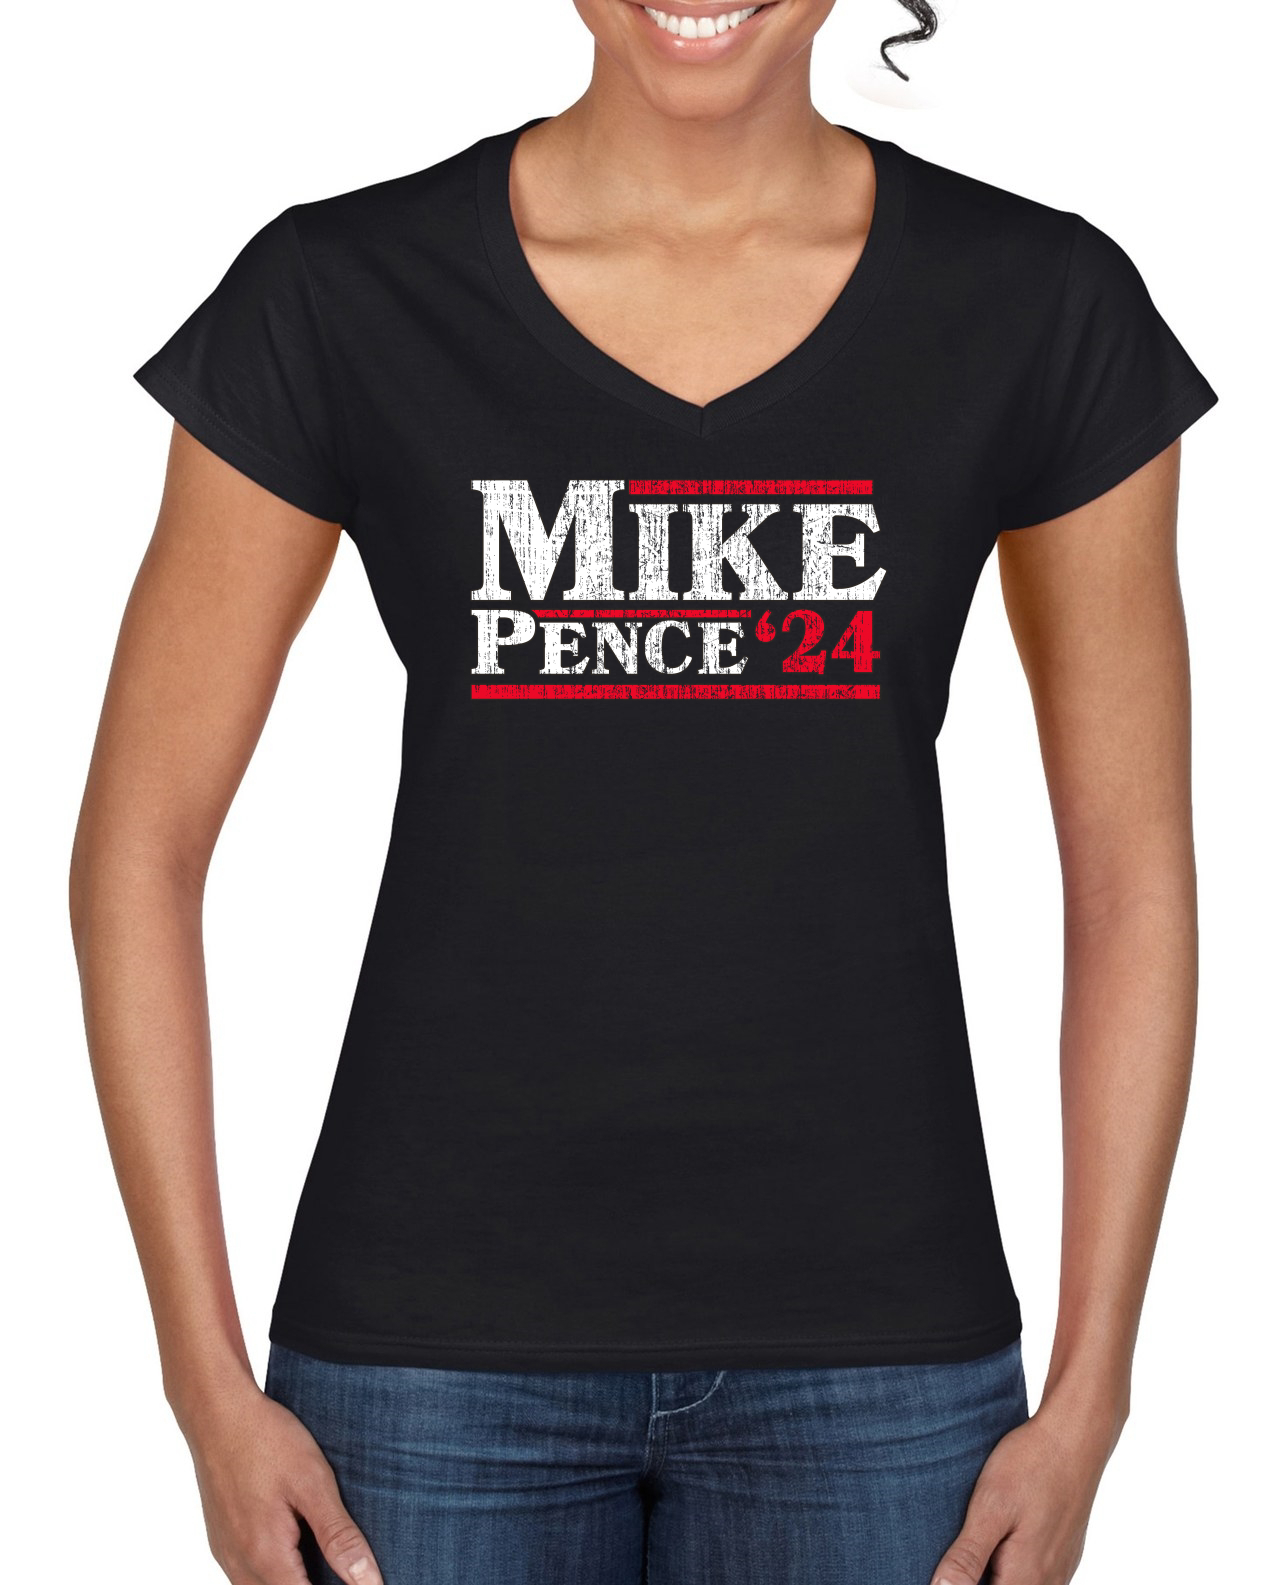 Mike Pence 2024 For President Political Women’s Standard VNeck Tee eBay